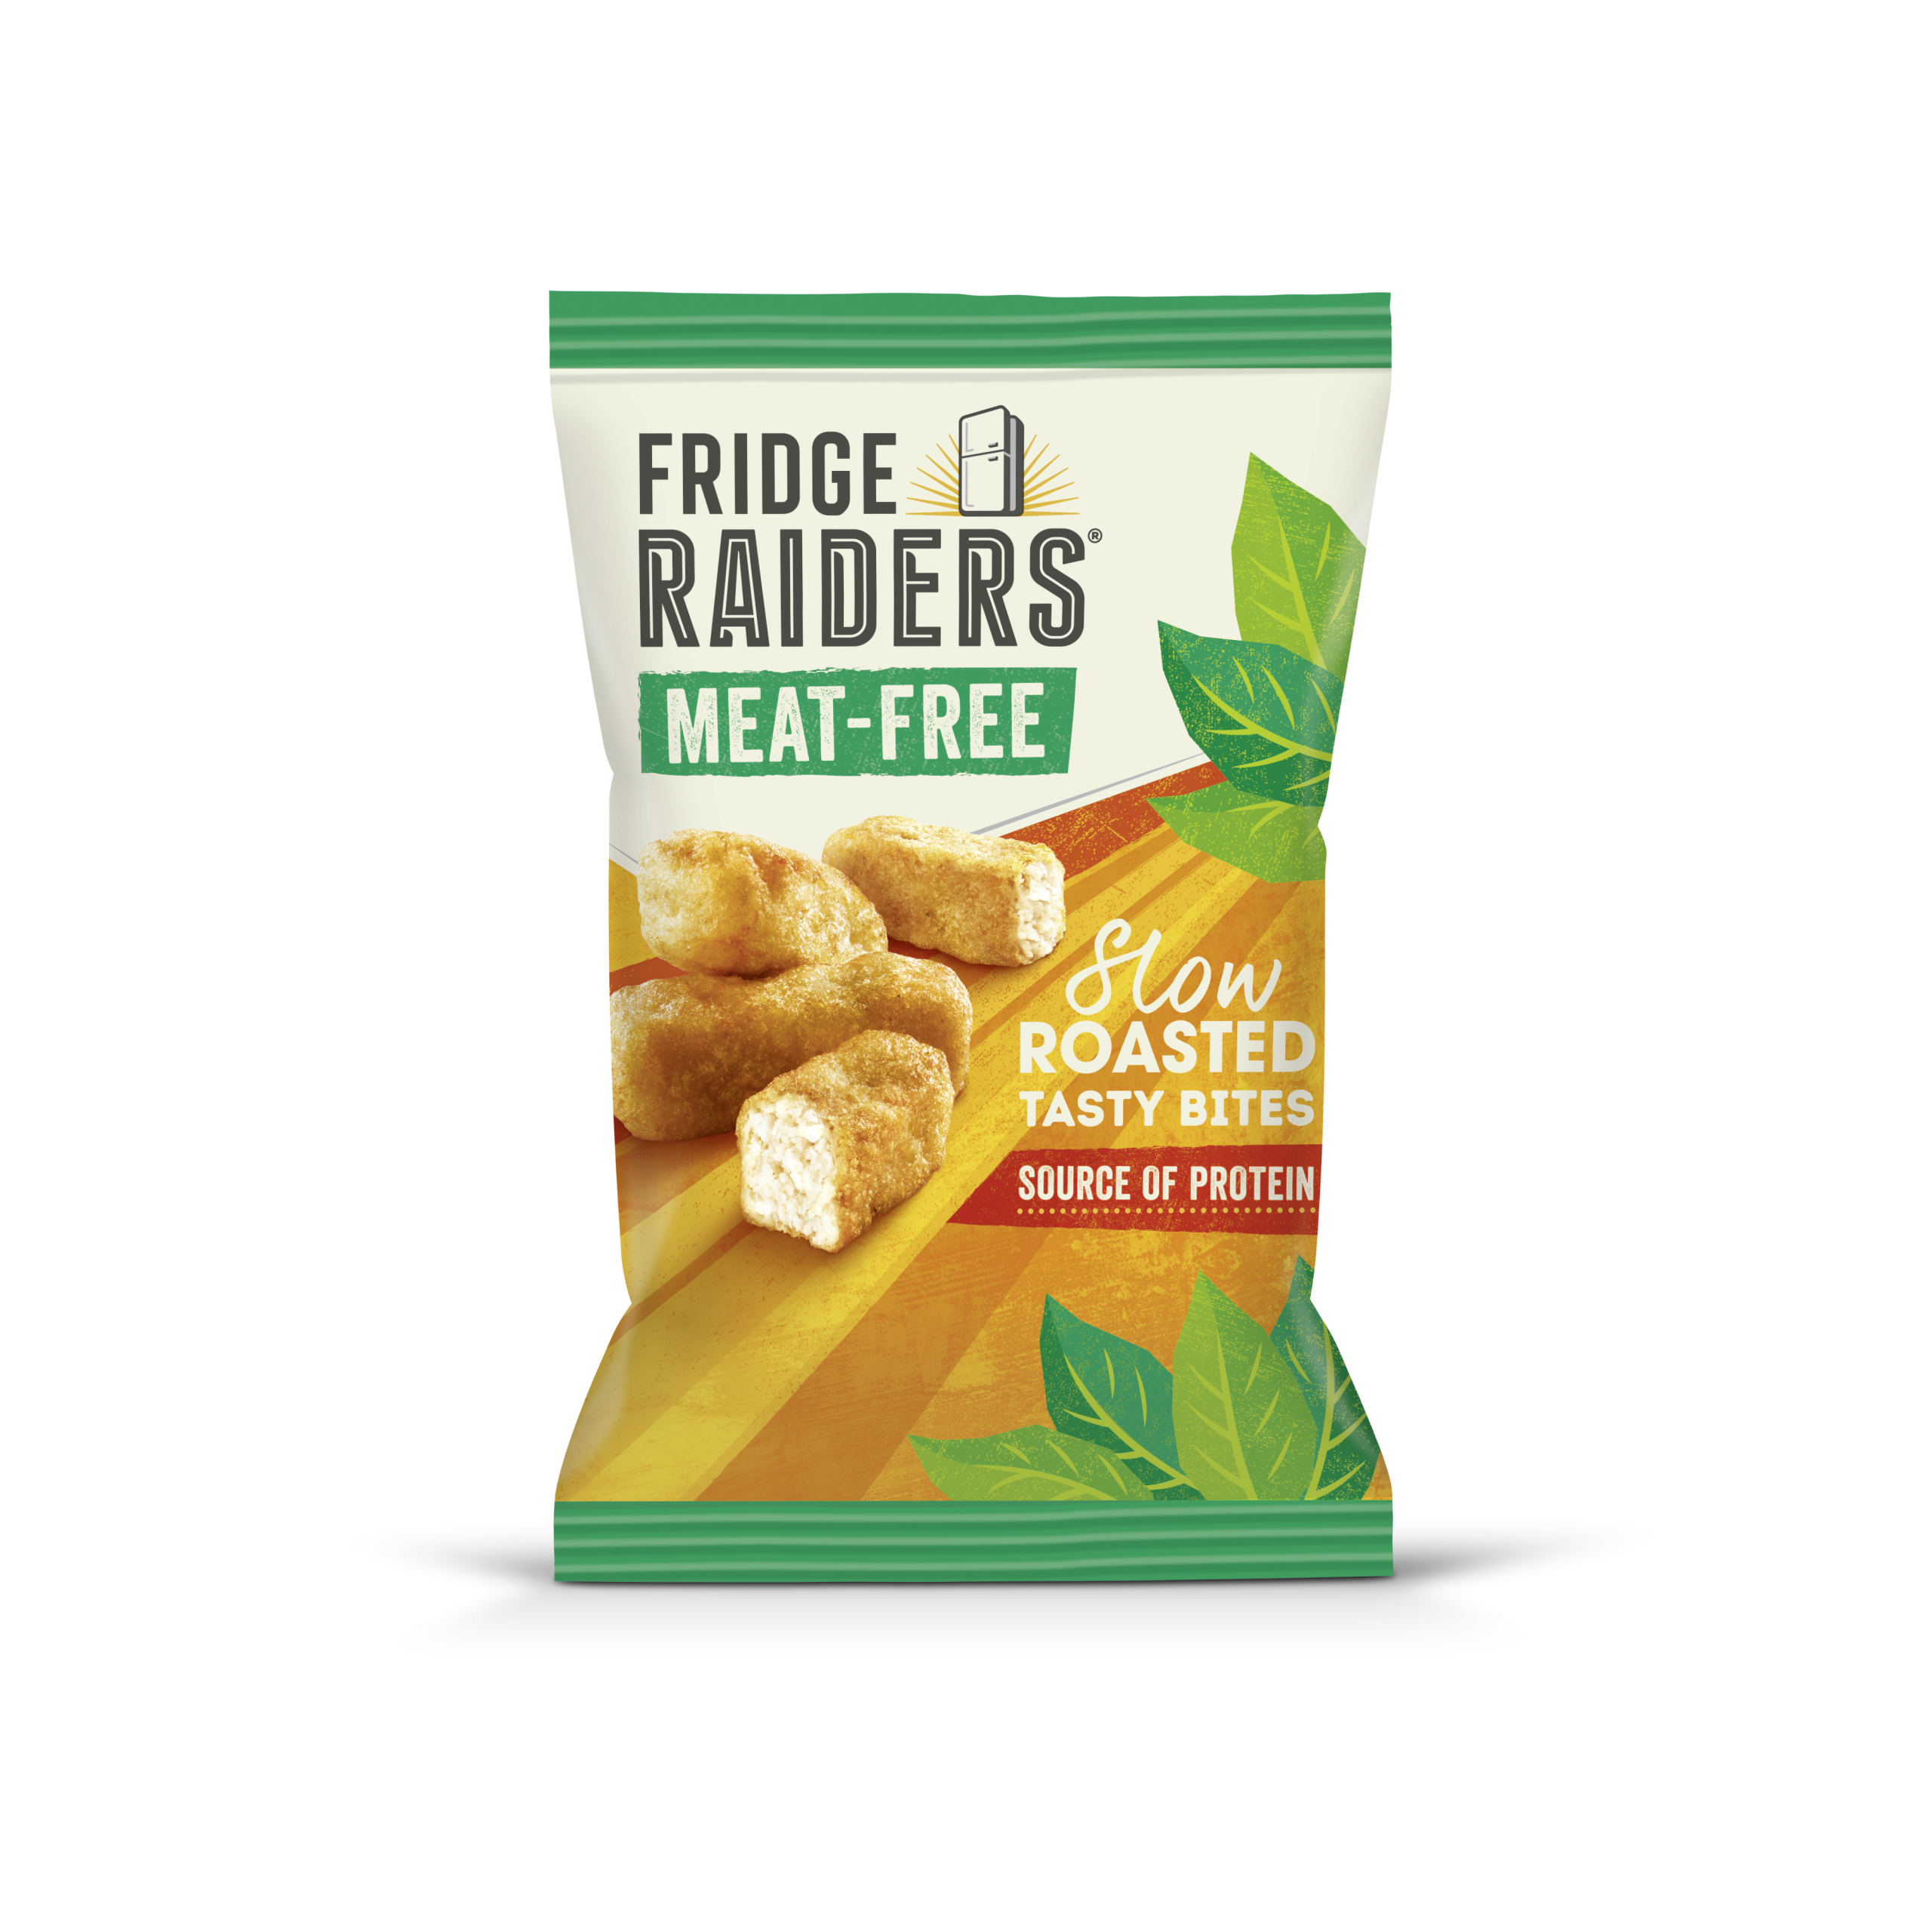 Fridge Raiders shakes up plant-based snacking with Meat-Free Tasty Bites